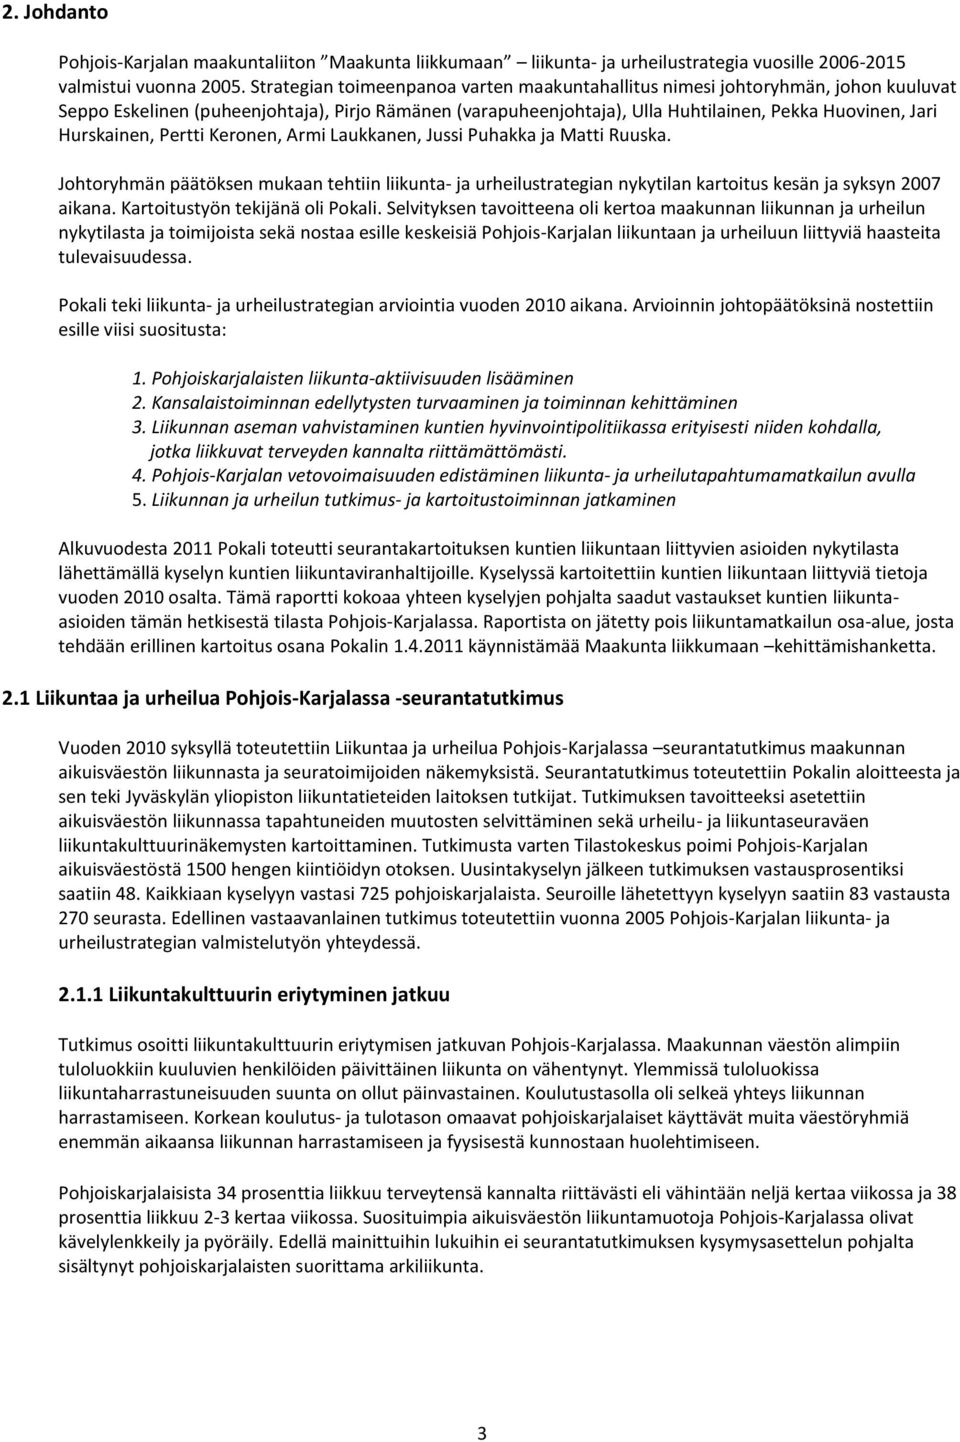 Hurskainen, Pertti Keronen, Armi Laukkanen, Jussi Puhakka ja Matti Ruuska. Johtoryhmän päätöksen mukaan tehtiin liikunta- ja urheilustrategian nykytilan kartoitus kesän ja syksyn 2007 aikana.